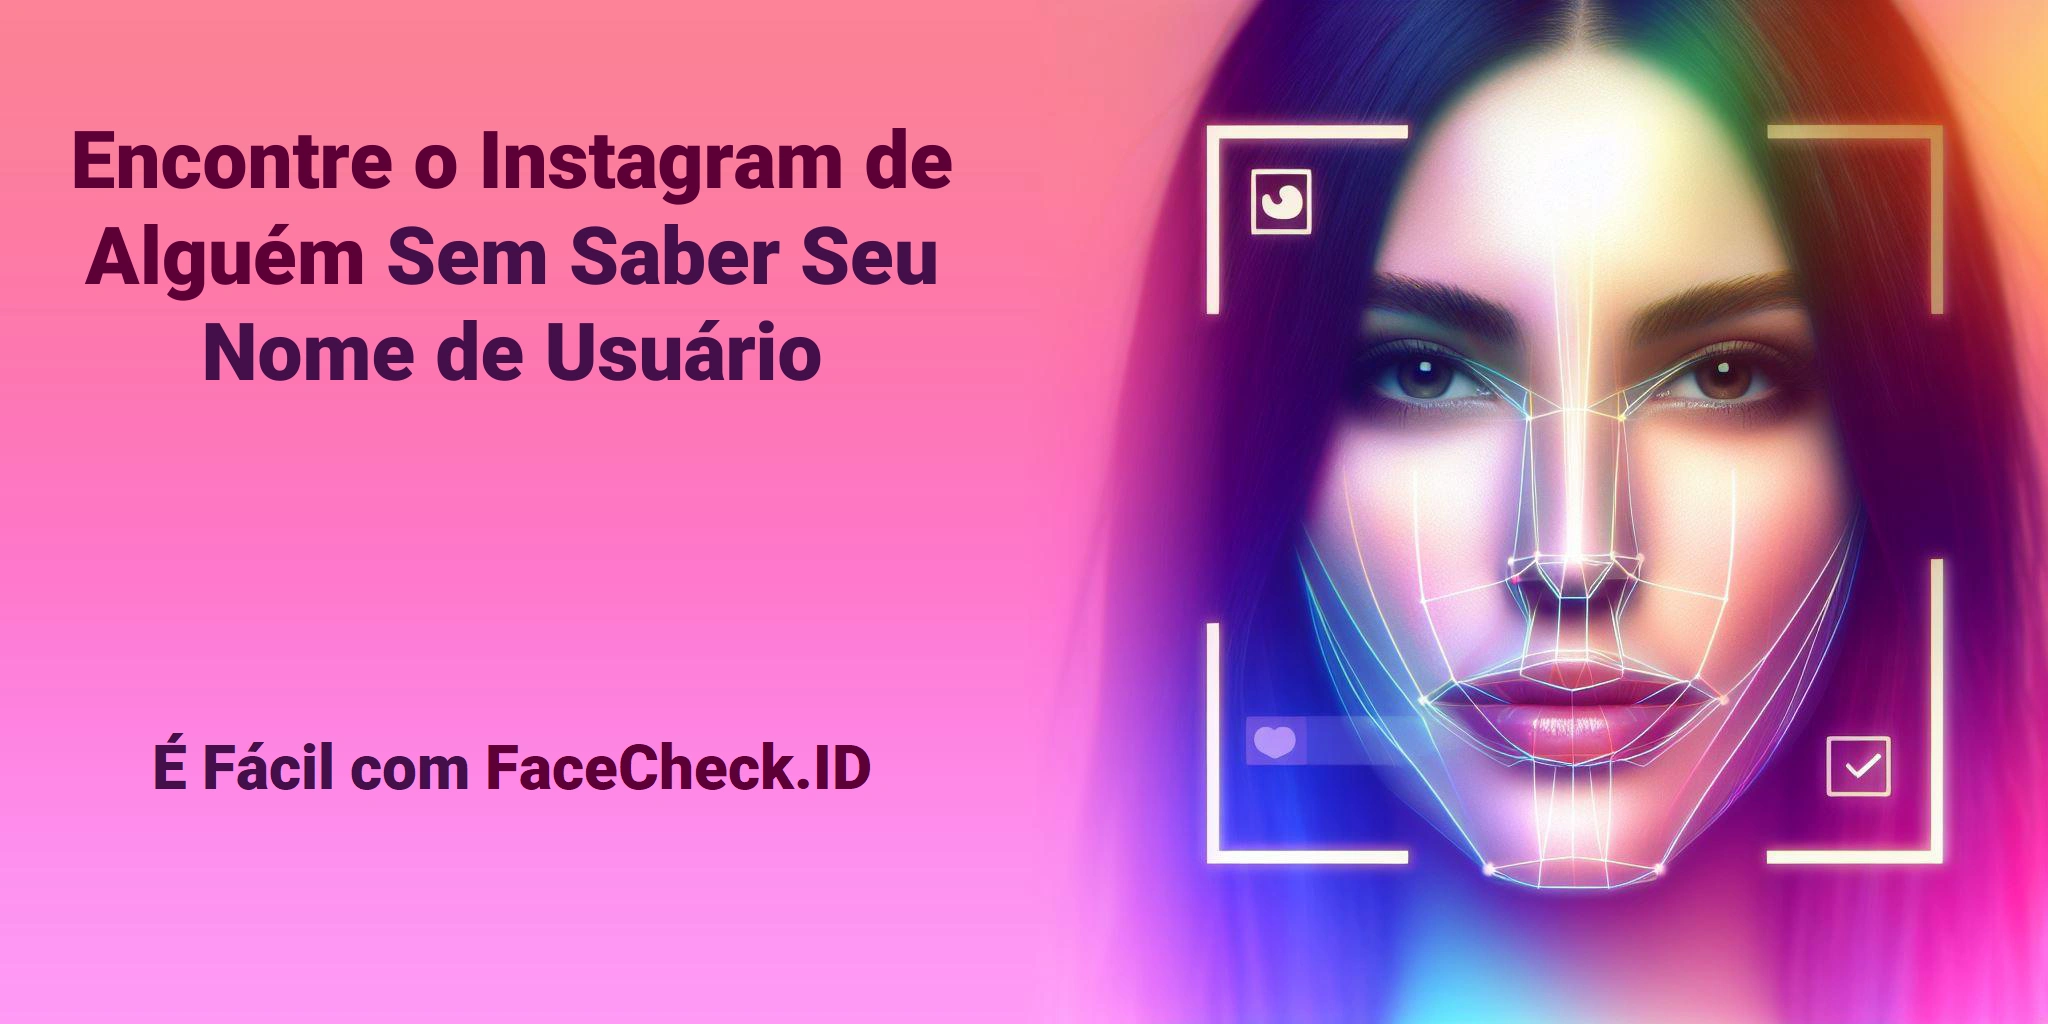 Encontre o Instagram de Alguém Sem Saber Seu Nome de Usuário É Fácil com FaceCheck.ID